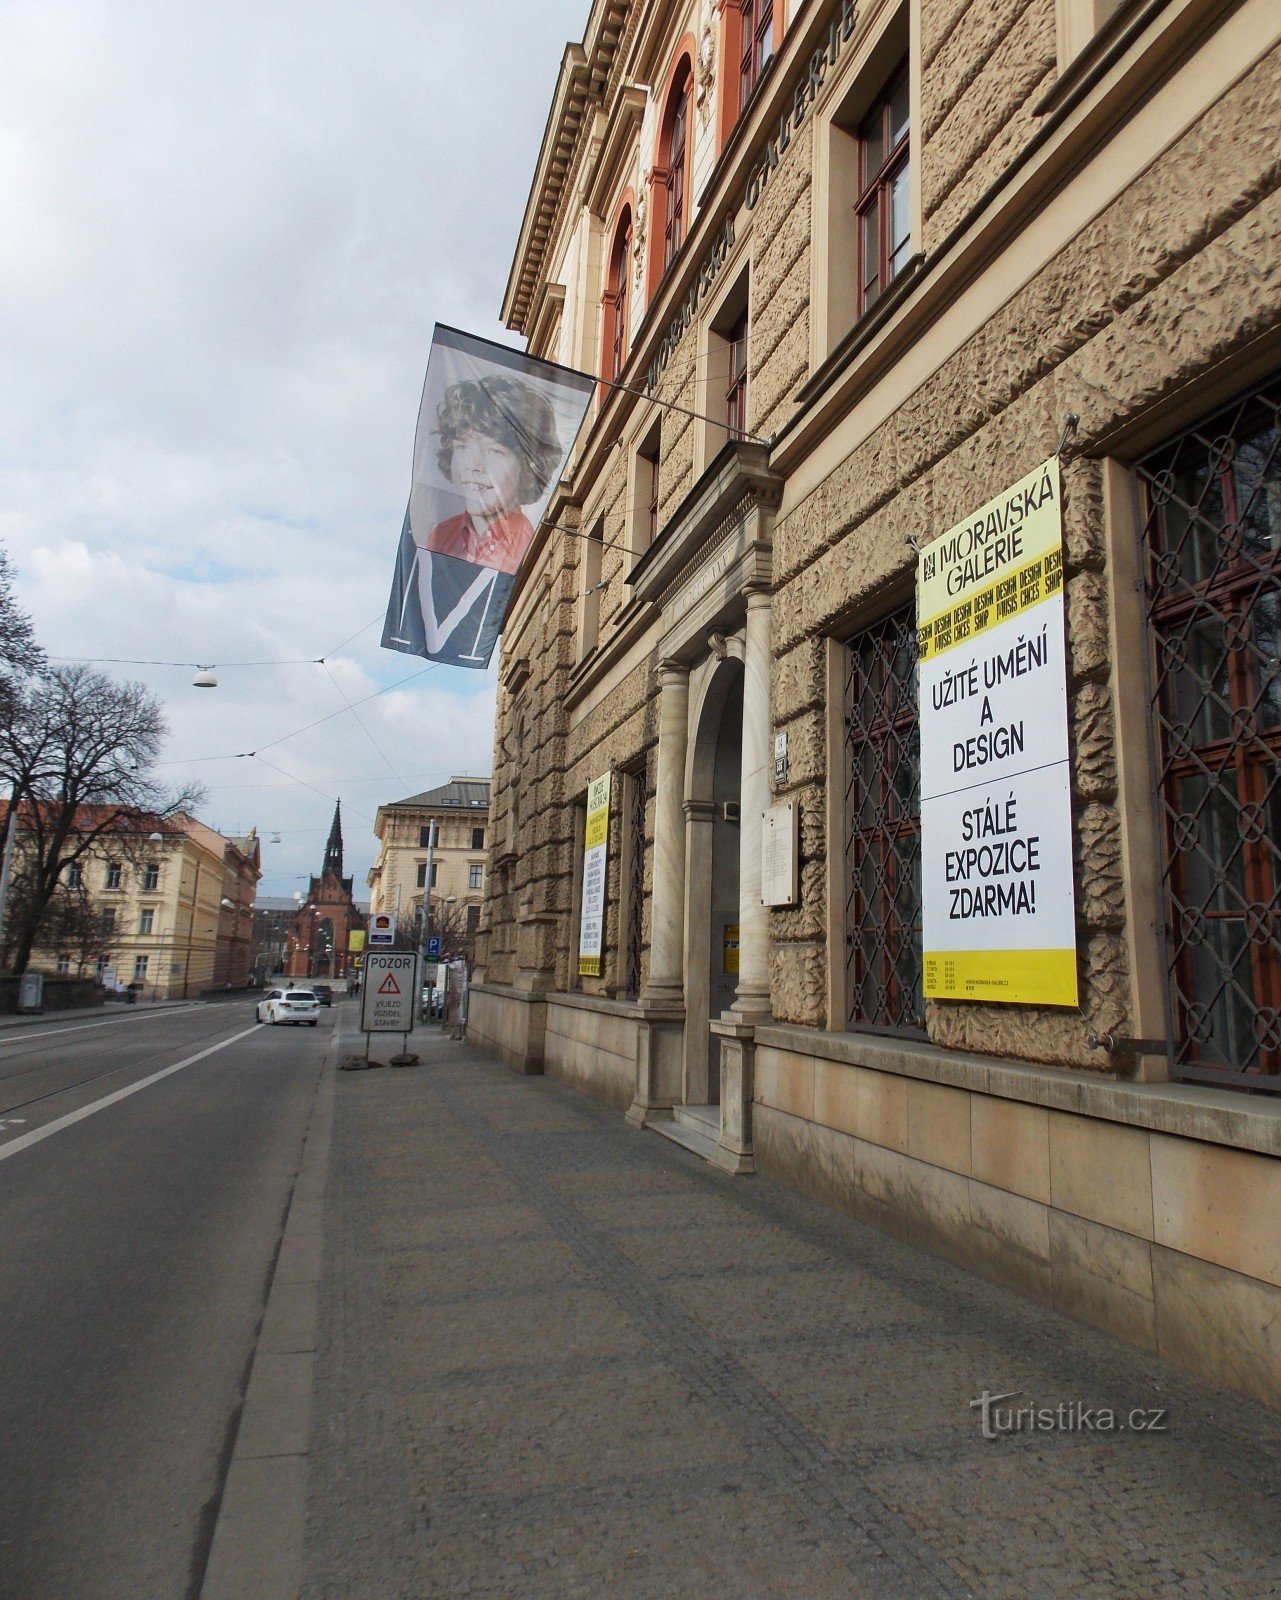 Μουσείο Τέχνης και Βιομηχανίας κάτω από το Špilberk στο Μπρνο